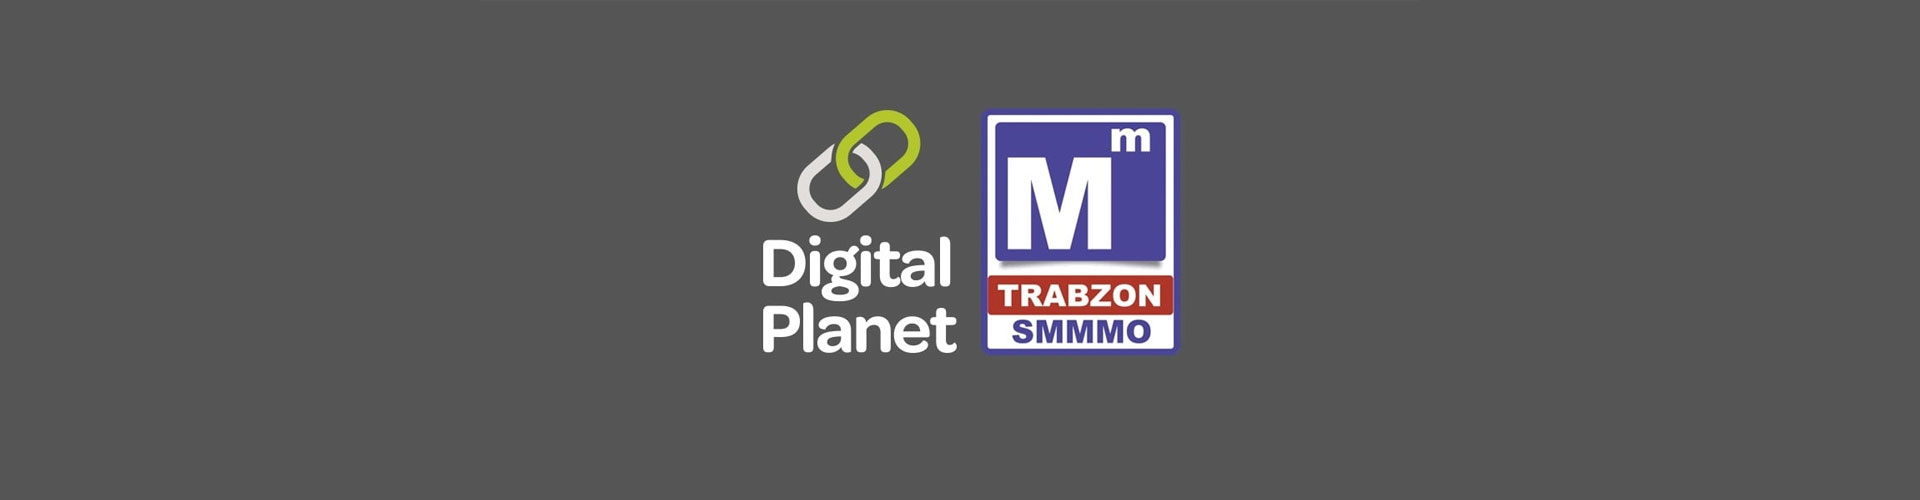 Digital Planet, Trabzonlu Mali Müşavirlere e-Dönüşüm’ü Anlatıyor